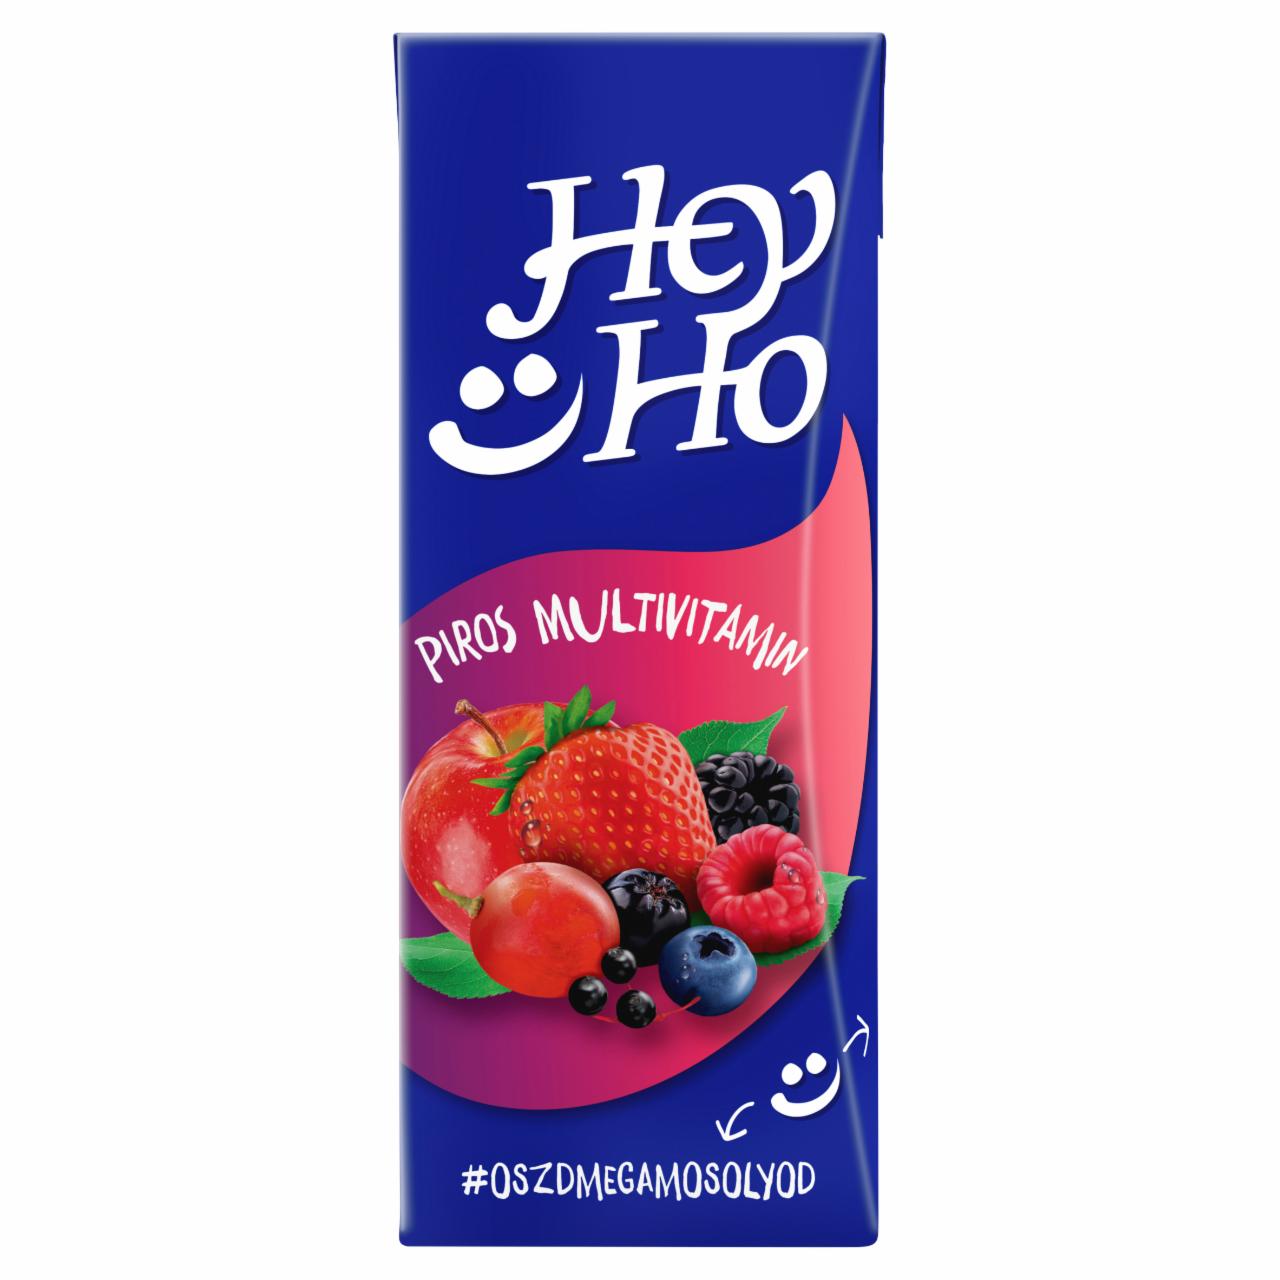 Képek - Hey-Ho piros multivitamin vegyes gyümölcsital cukorral, édesítőszerrel és 7 vitaminnal 0,2 l